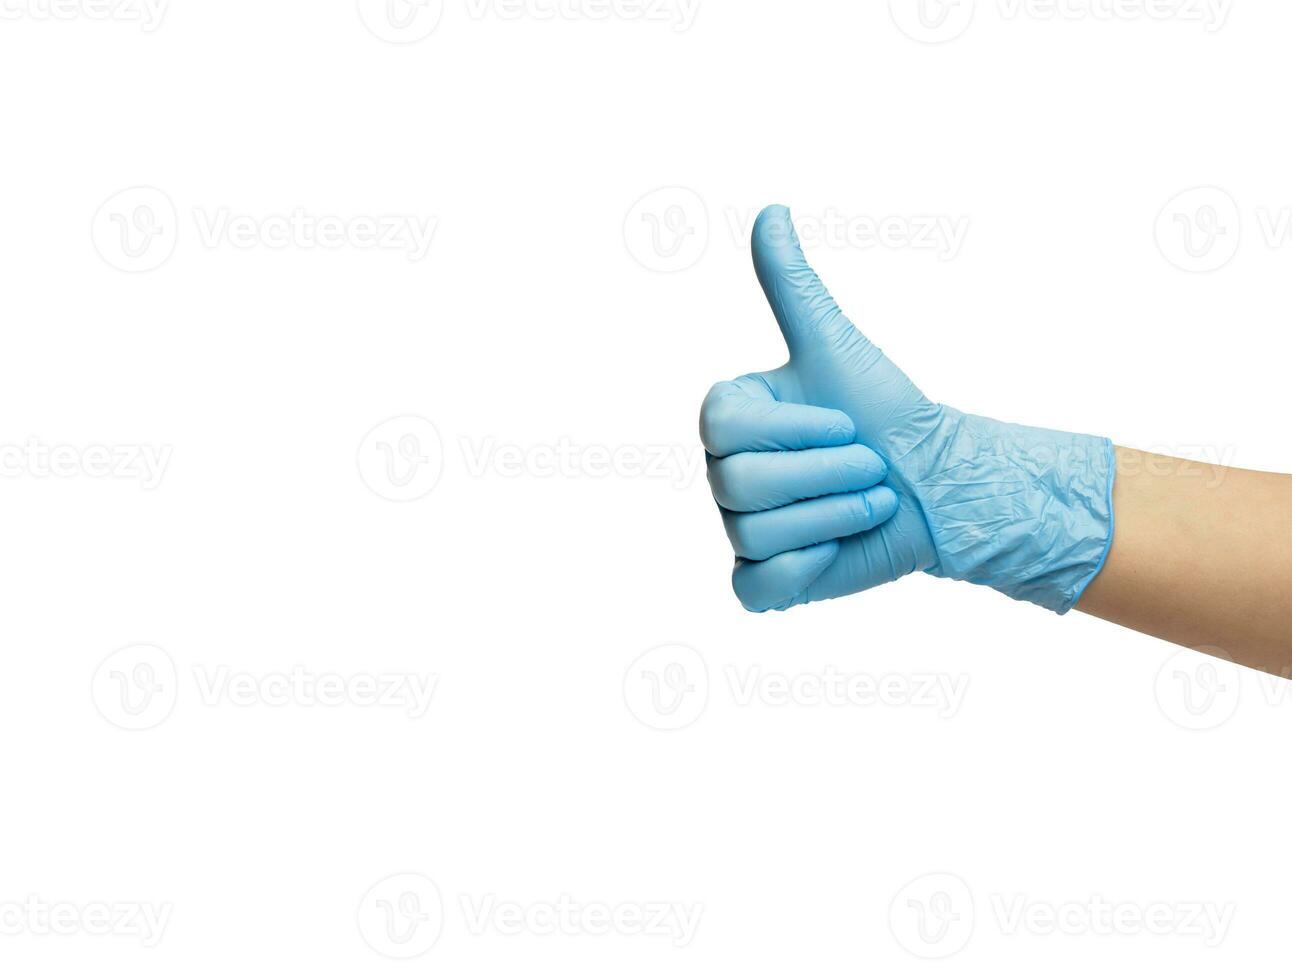 de hand- in de handschoen van de nitril shows de gebaar van de duim omhoog. geïsoleerd Aan een wit achtergrond. hoog kwaliteit foto